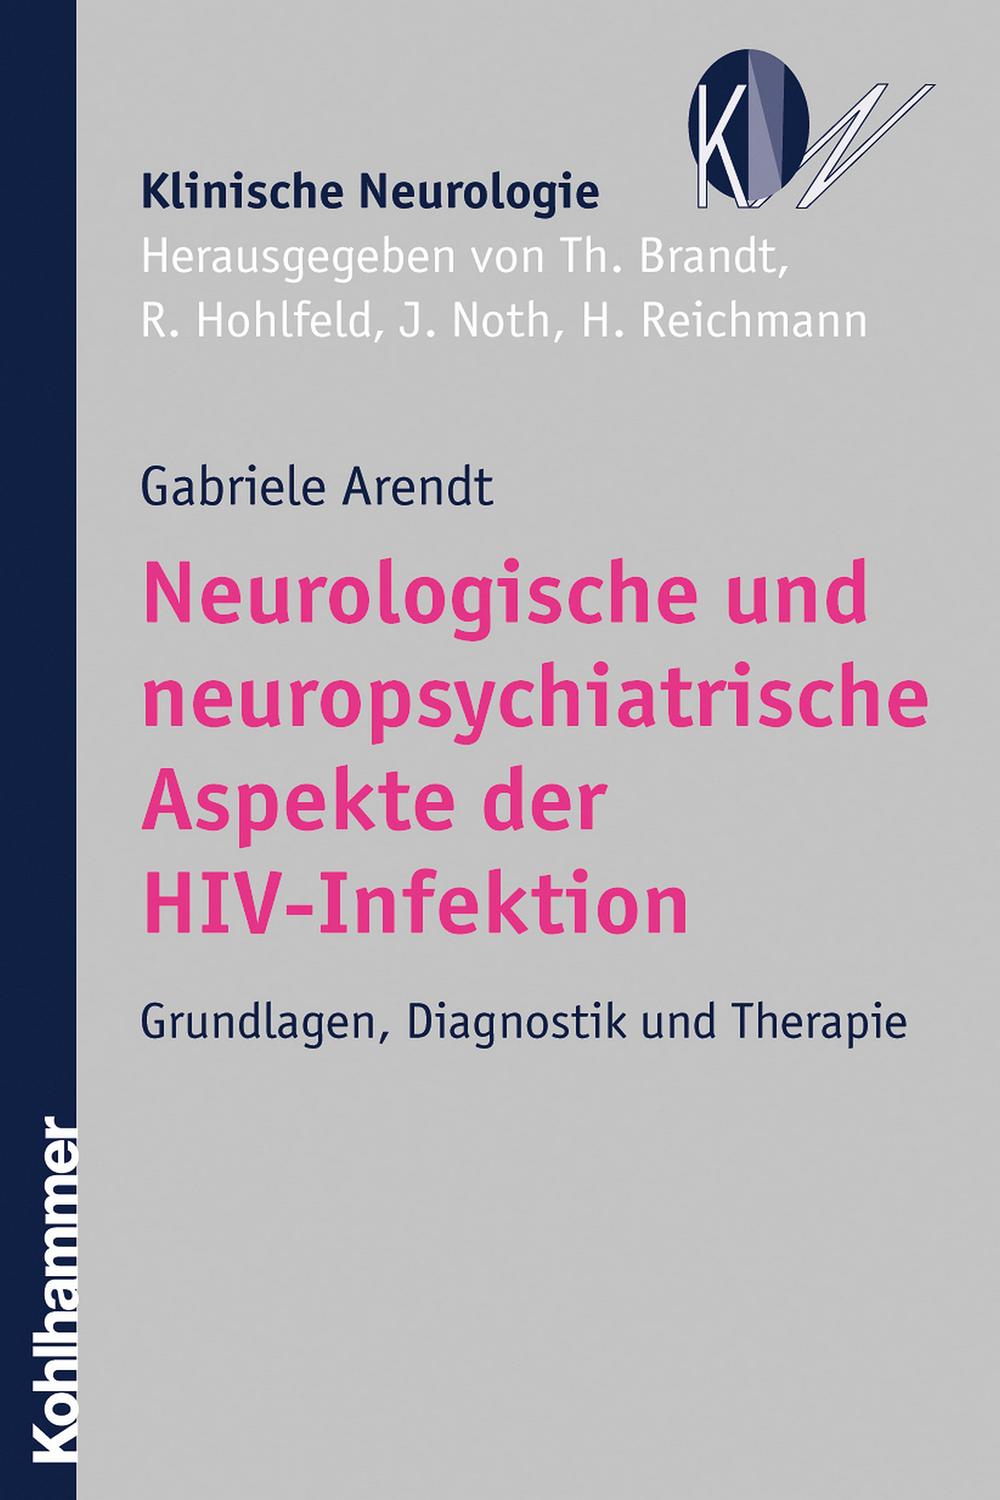 Neurologische und neuropsychiatrische Aspekte der HIV-Infektion - Gabriele Arendt, Thomas Brandt, Reinhard Hohlfeld, Johannes Noth, Heinz Reichmann